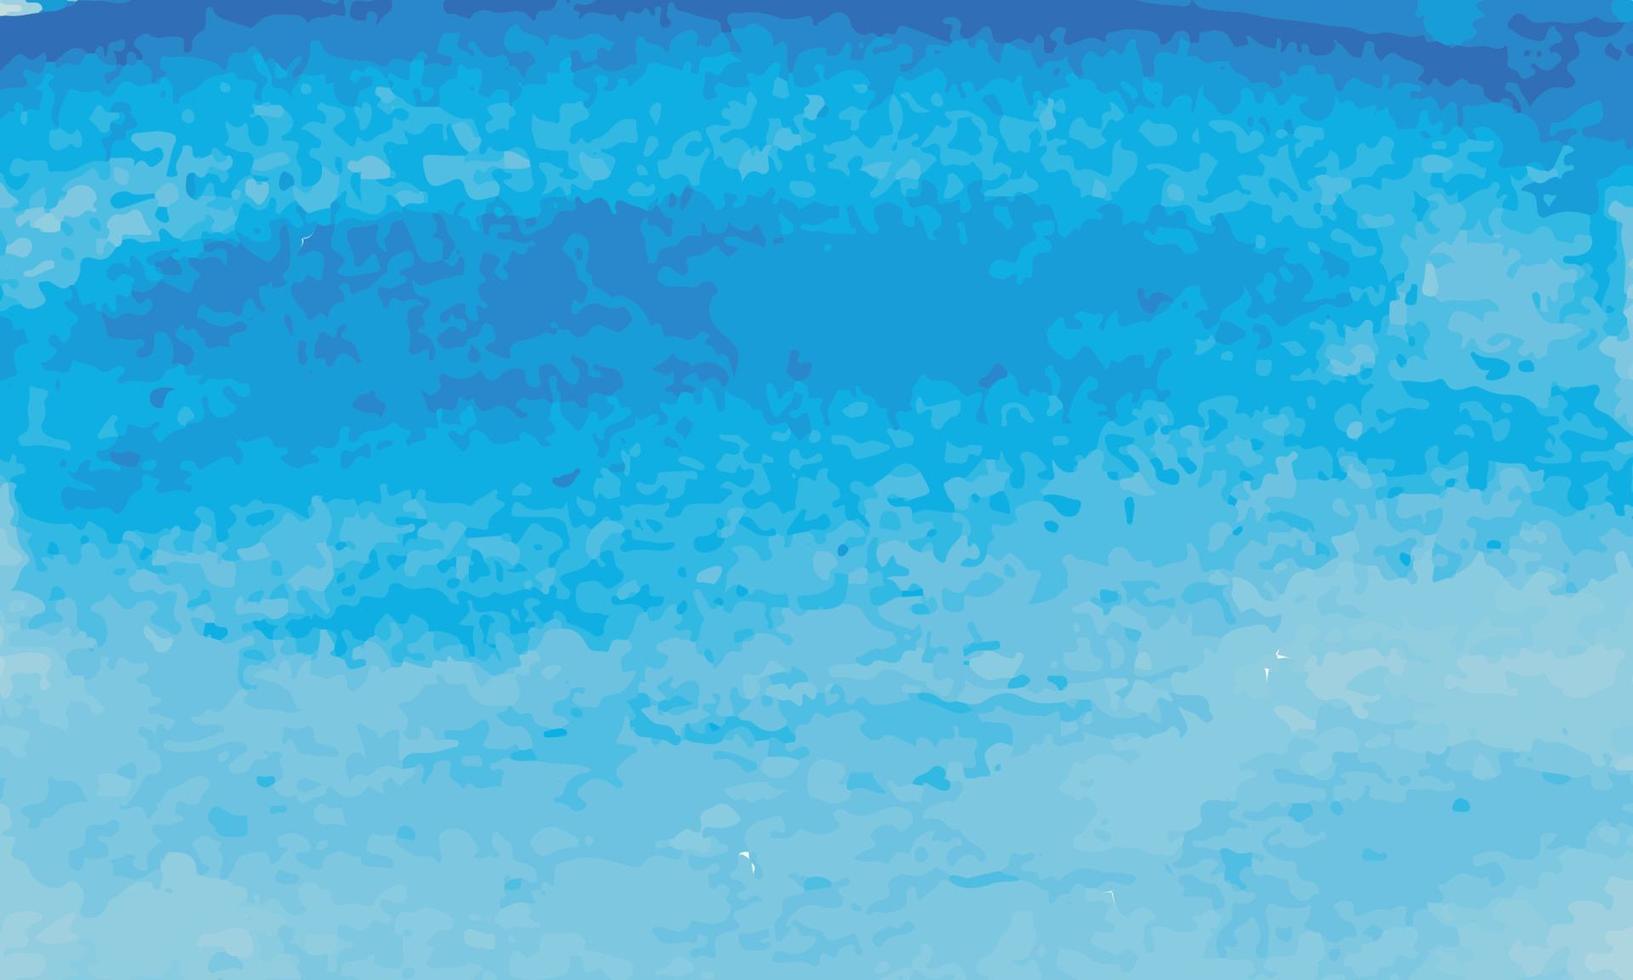 bella struttura astratta della parete dello stucco dipinta di azzurro decorativo del grunge. acquerello di carta di natale di inverno grezzo fatto a mano ampio sfondo vettore